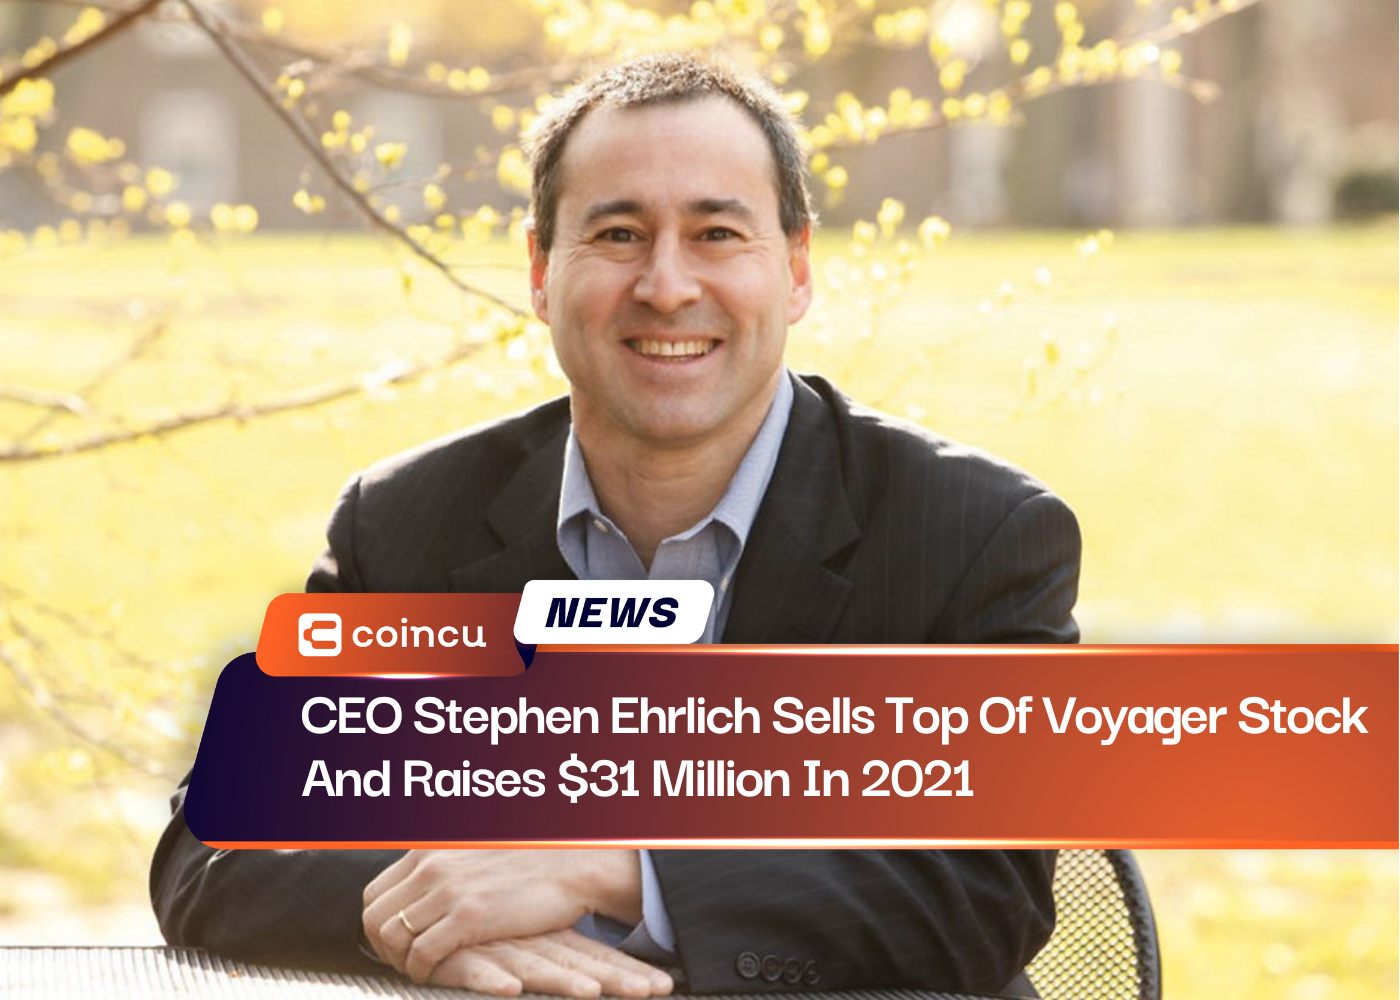 CEO Stephen Ehrlich verkauft Top-of-Voyager-Aktien und sammelt 31 2021 Millionen US-Dollar ein